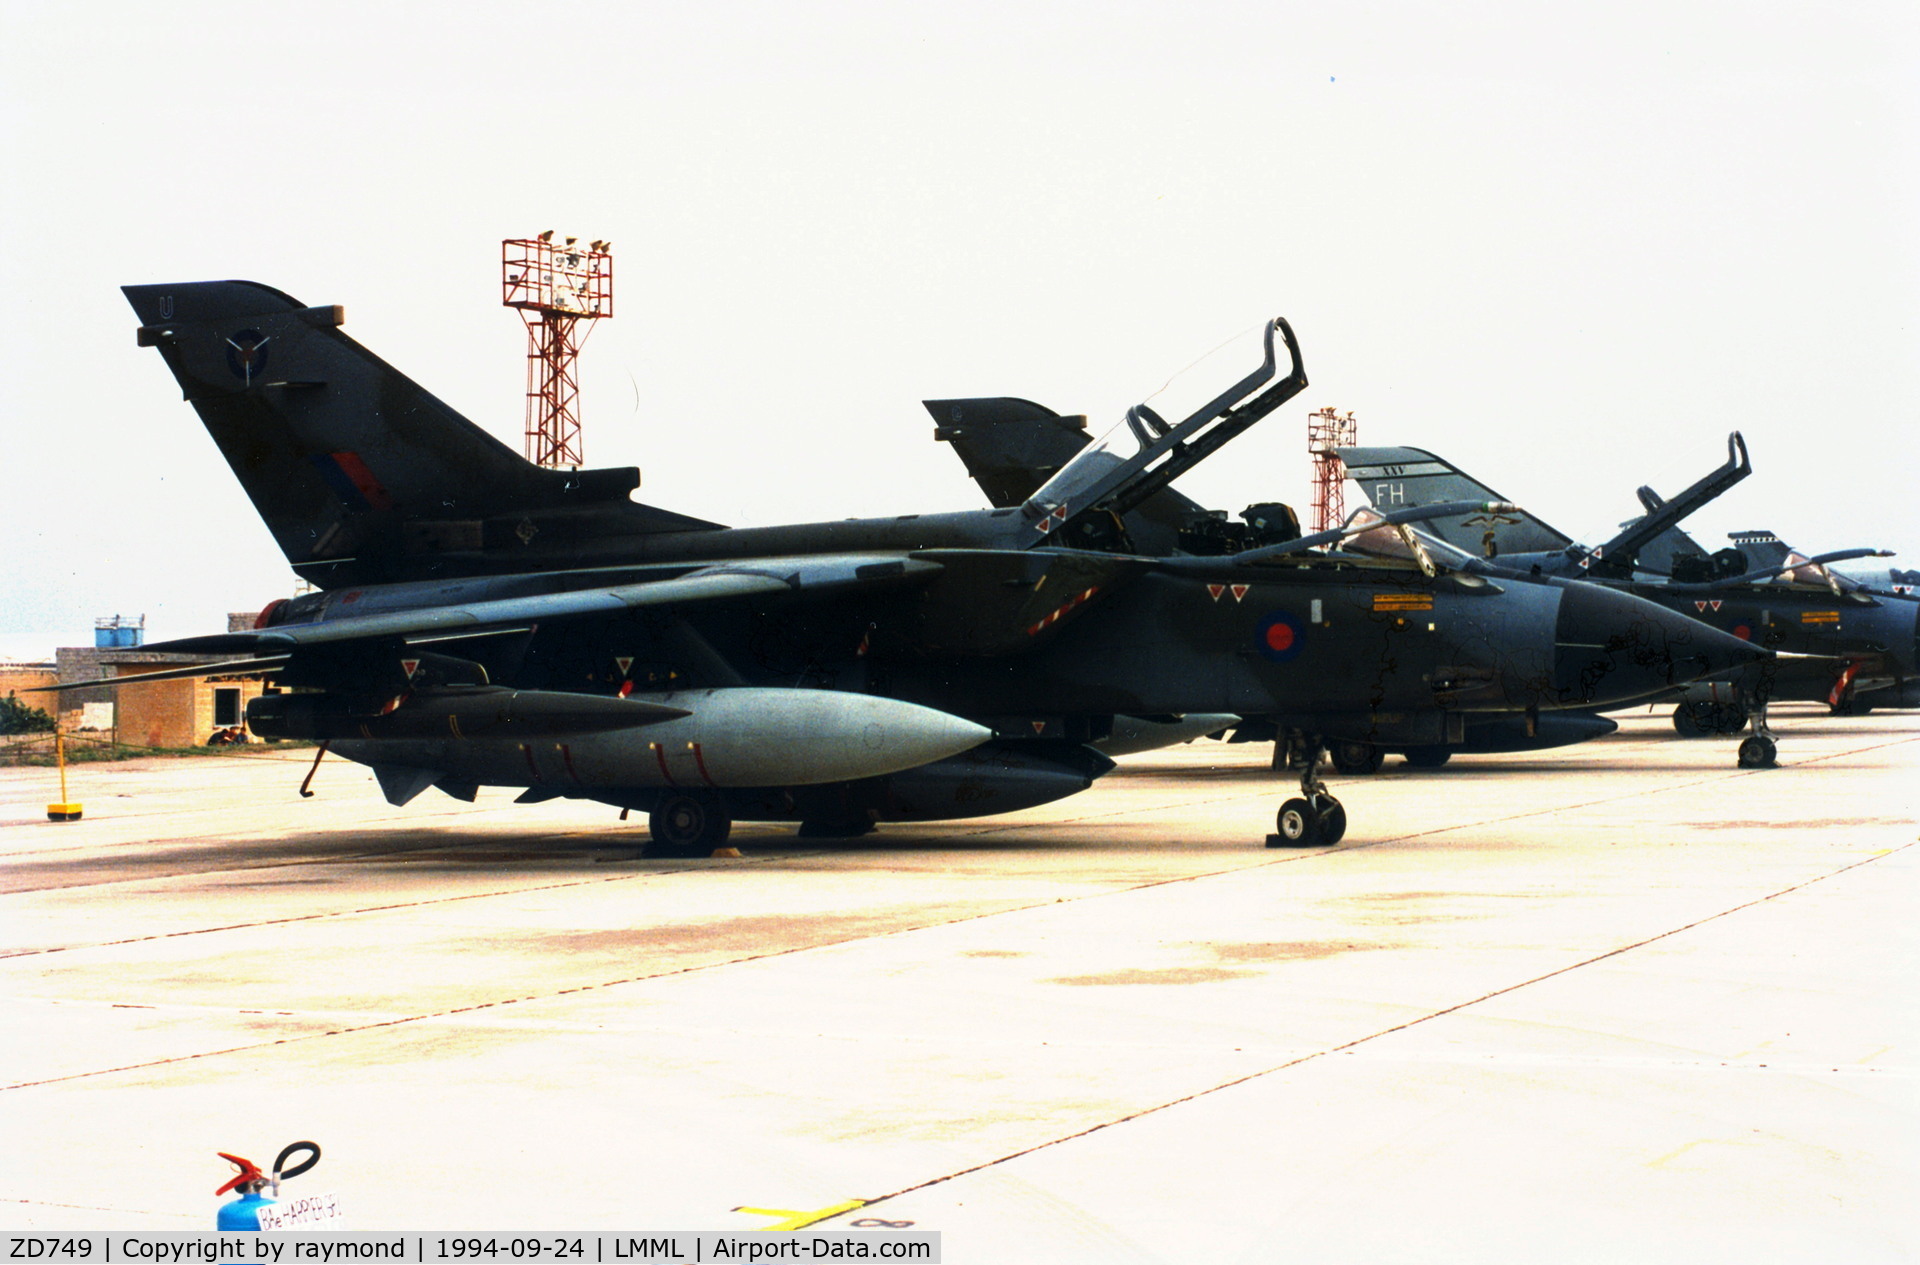 ZD749, 1984 Panavia Tornado GR.1 C/N 384/BS130/3177, Tornado ZD749/U SAOUE RAF